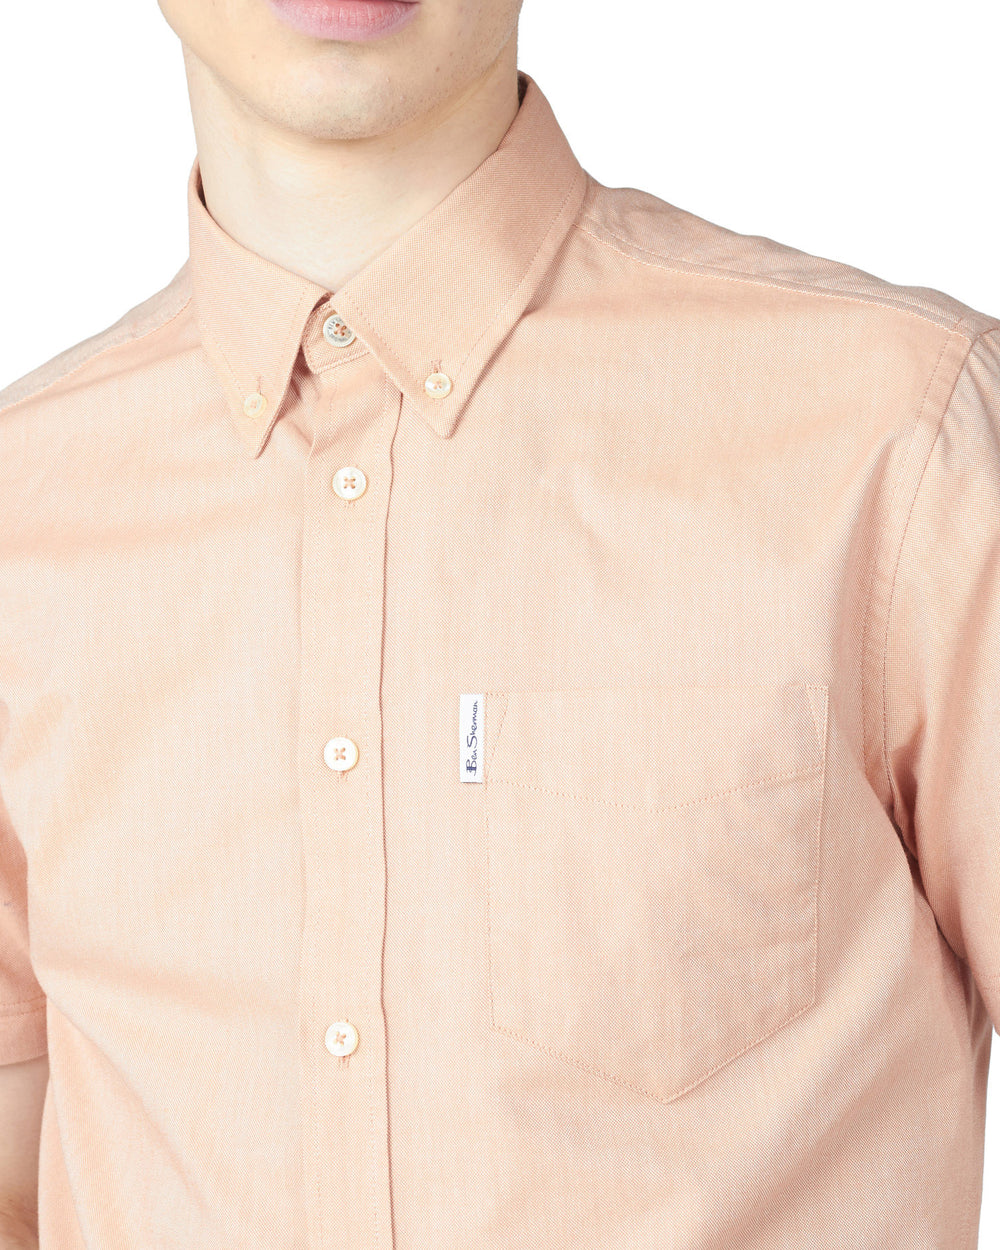 Short-Sleeve Signature Oxford Shirt - Anise